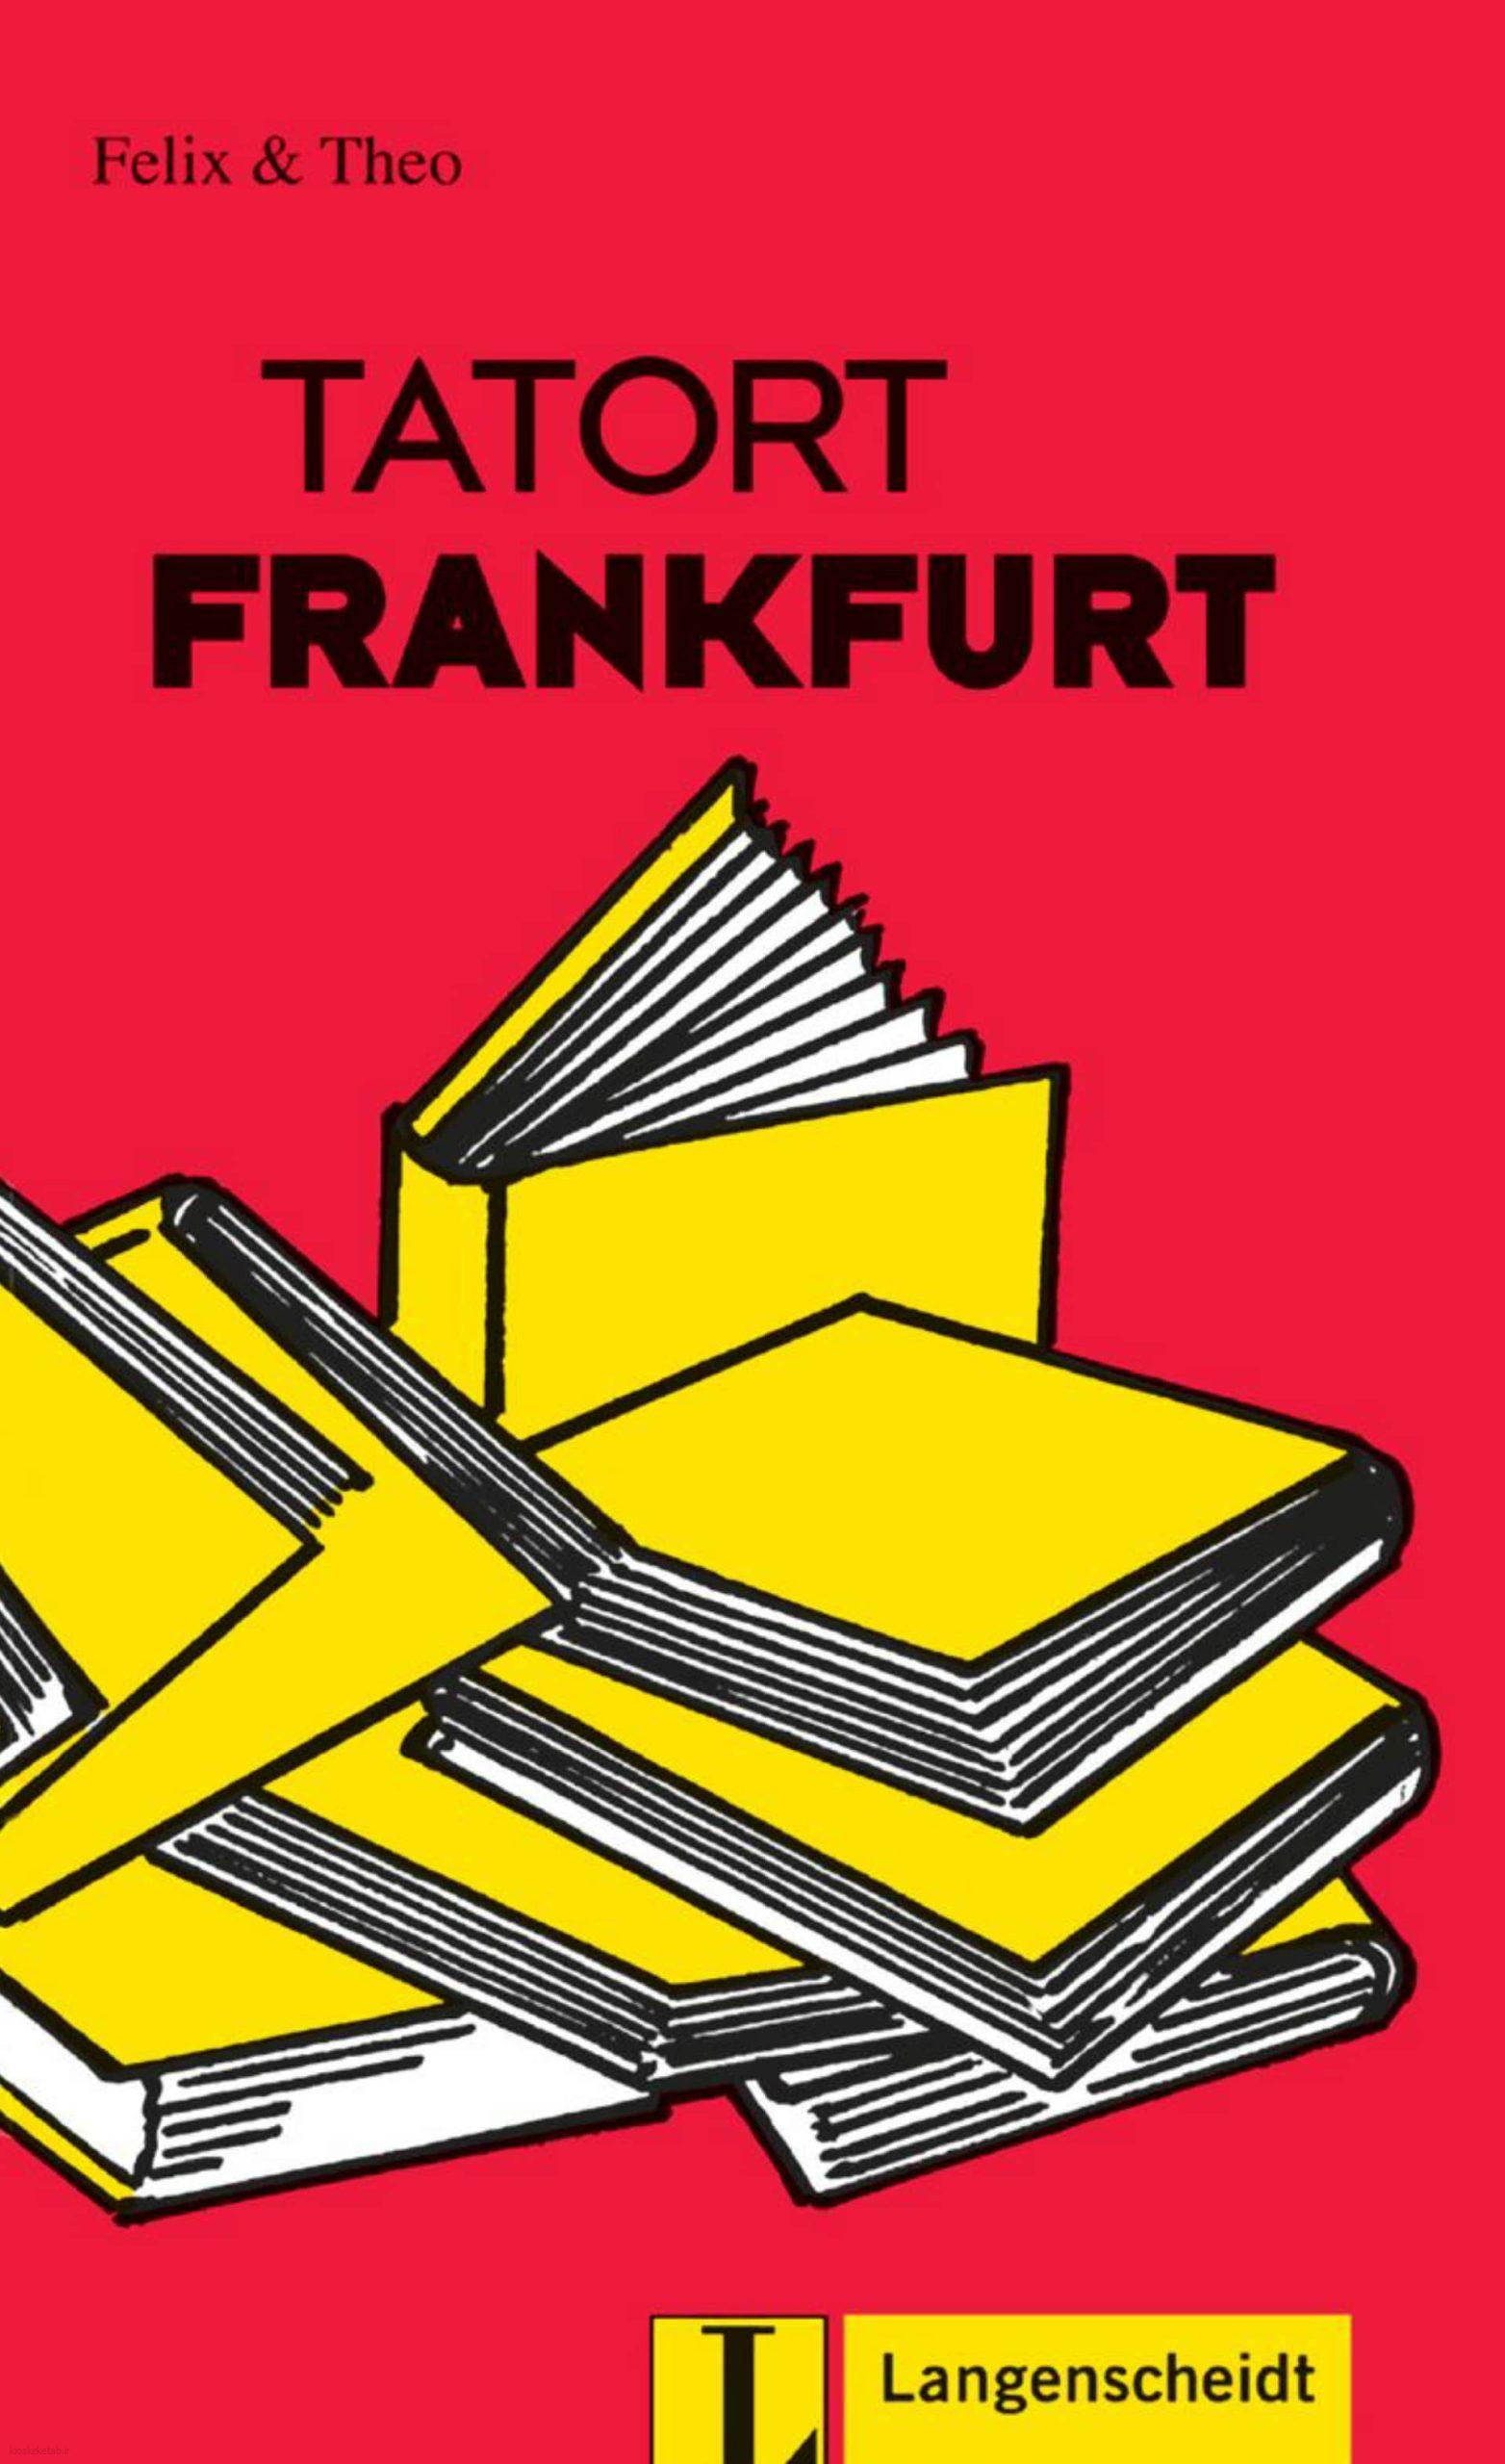 دانلود کتاب آلمانیfelix und theo tatort frankfurt